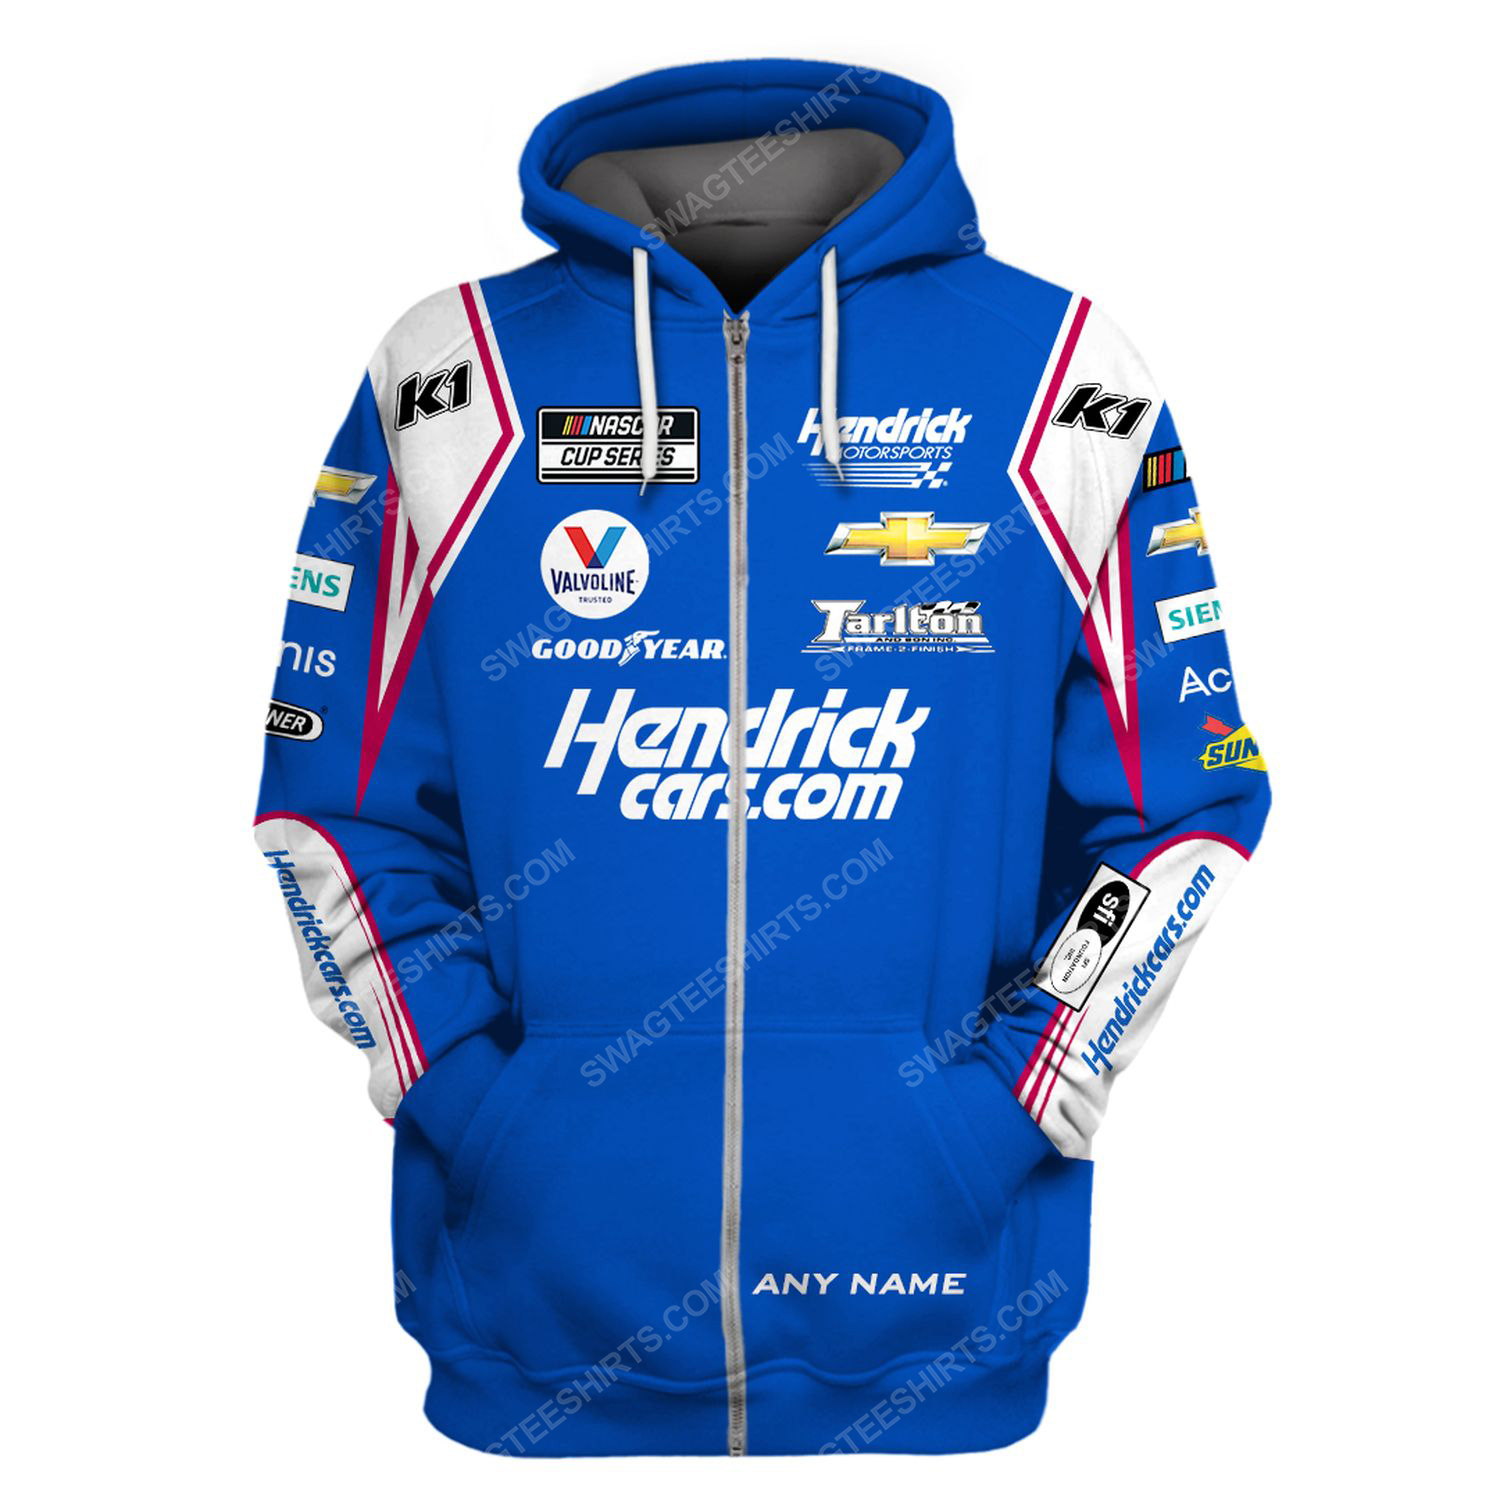 Custom hendrick racing team motorsport full printing zip hoodie